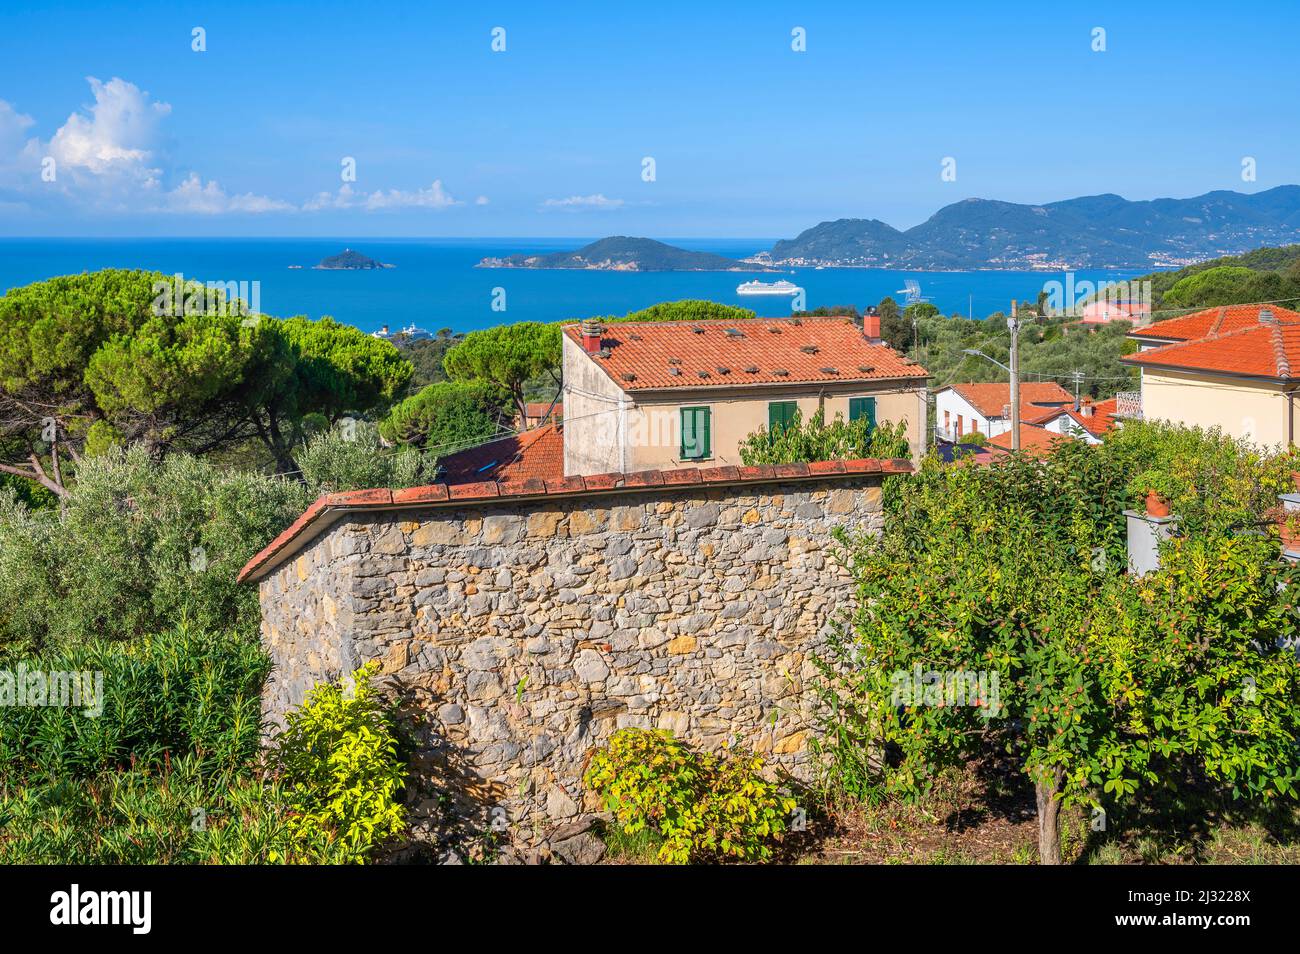 View from Montemarcello to the Gulf of La Spezia, La Spezia Province, Liguria, Italy Stock Photo